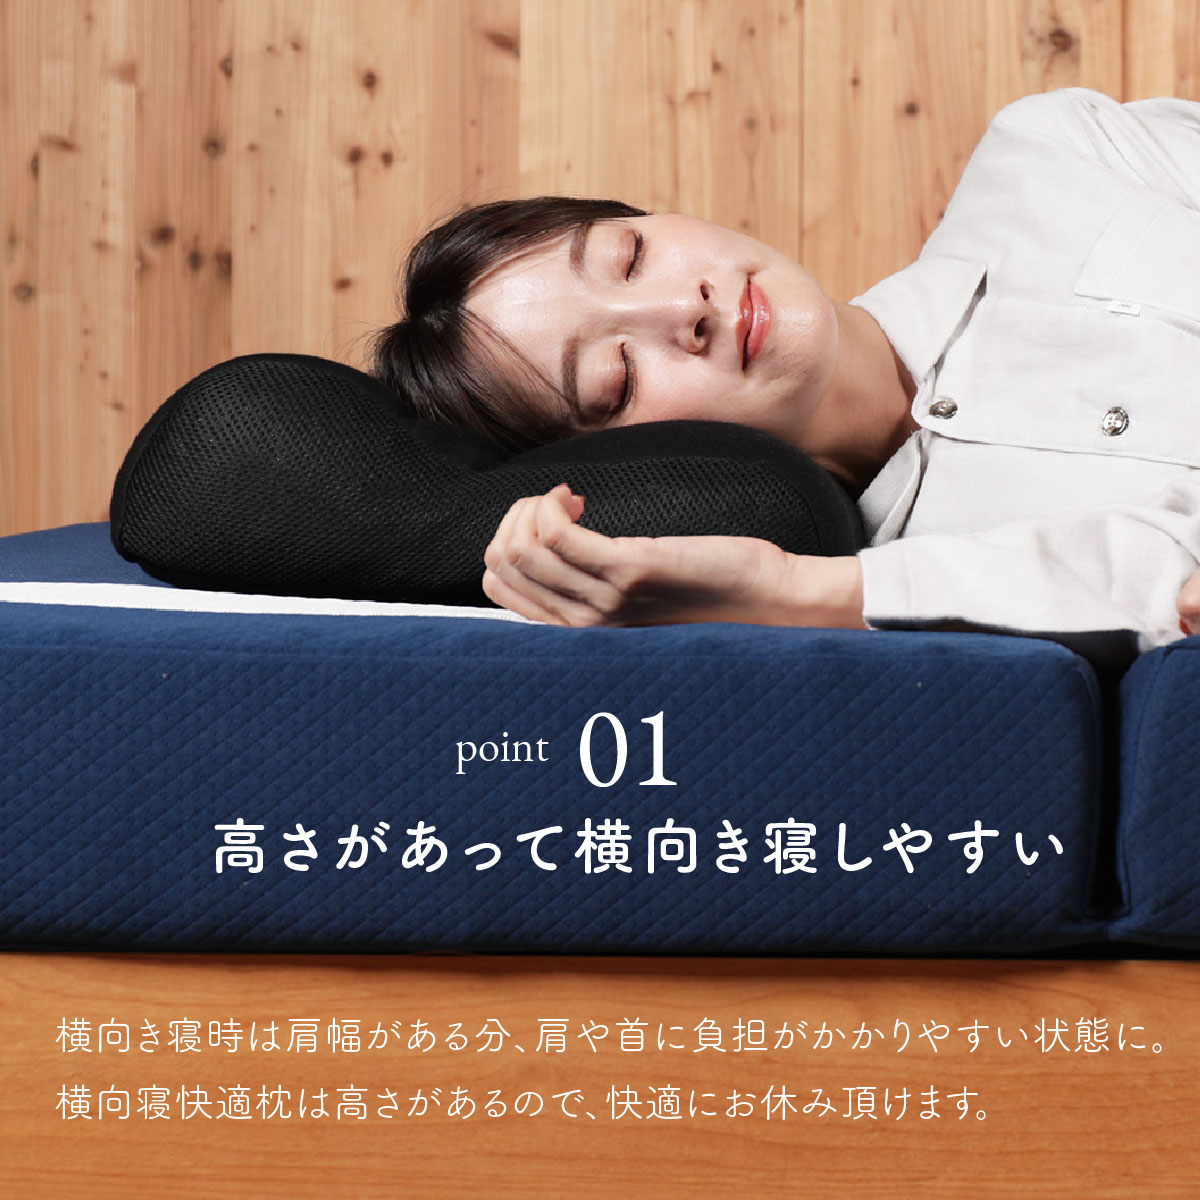 枕 まくら ピロー 横寝 横向き寝 いびき 防止 無呼吸症候群 横向